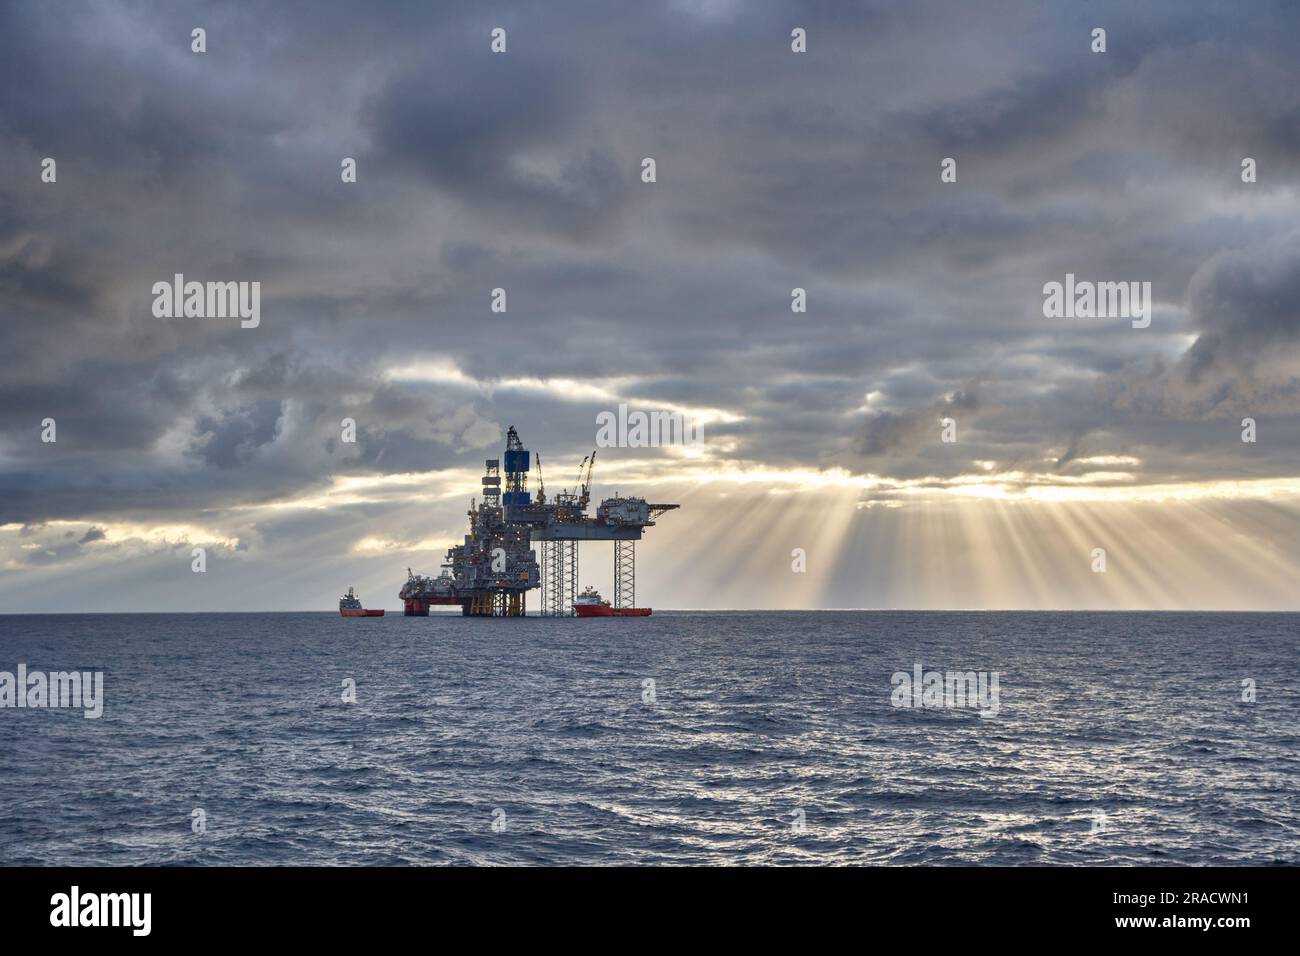 Vue de la plate-forme de forage Jack UP et de la plate-forme semi-submersible avec navires ravitailleurs en mer. Banque D'Images